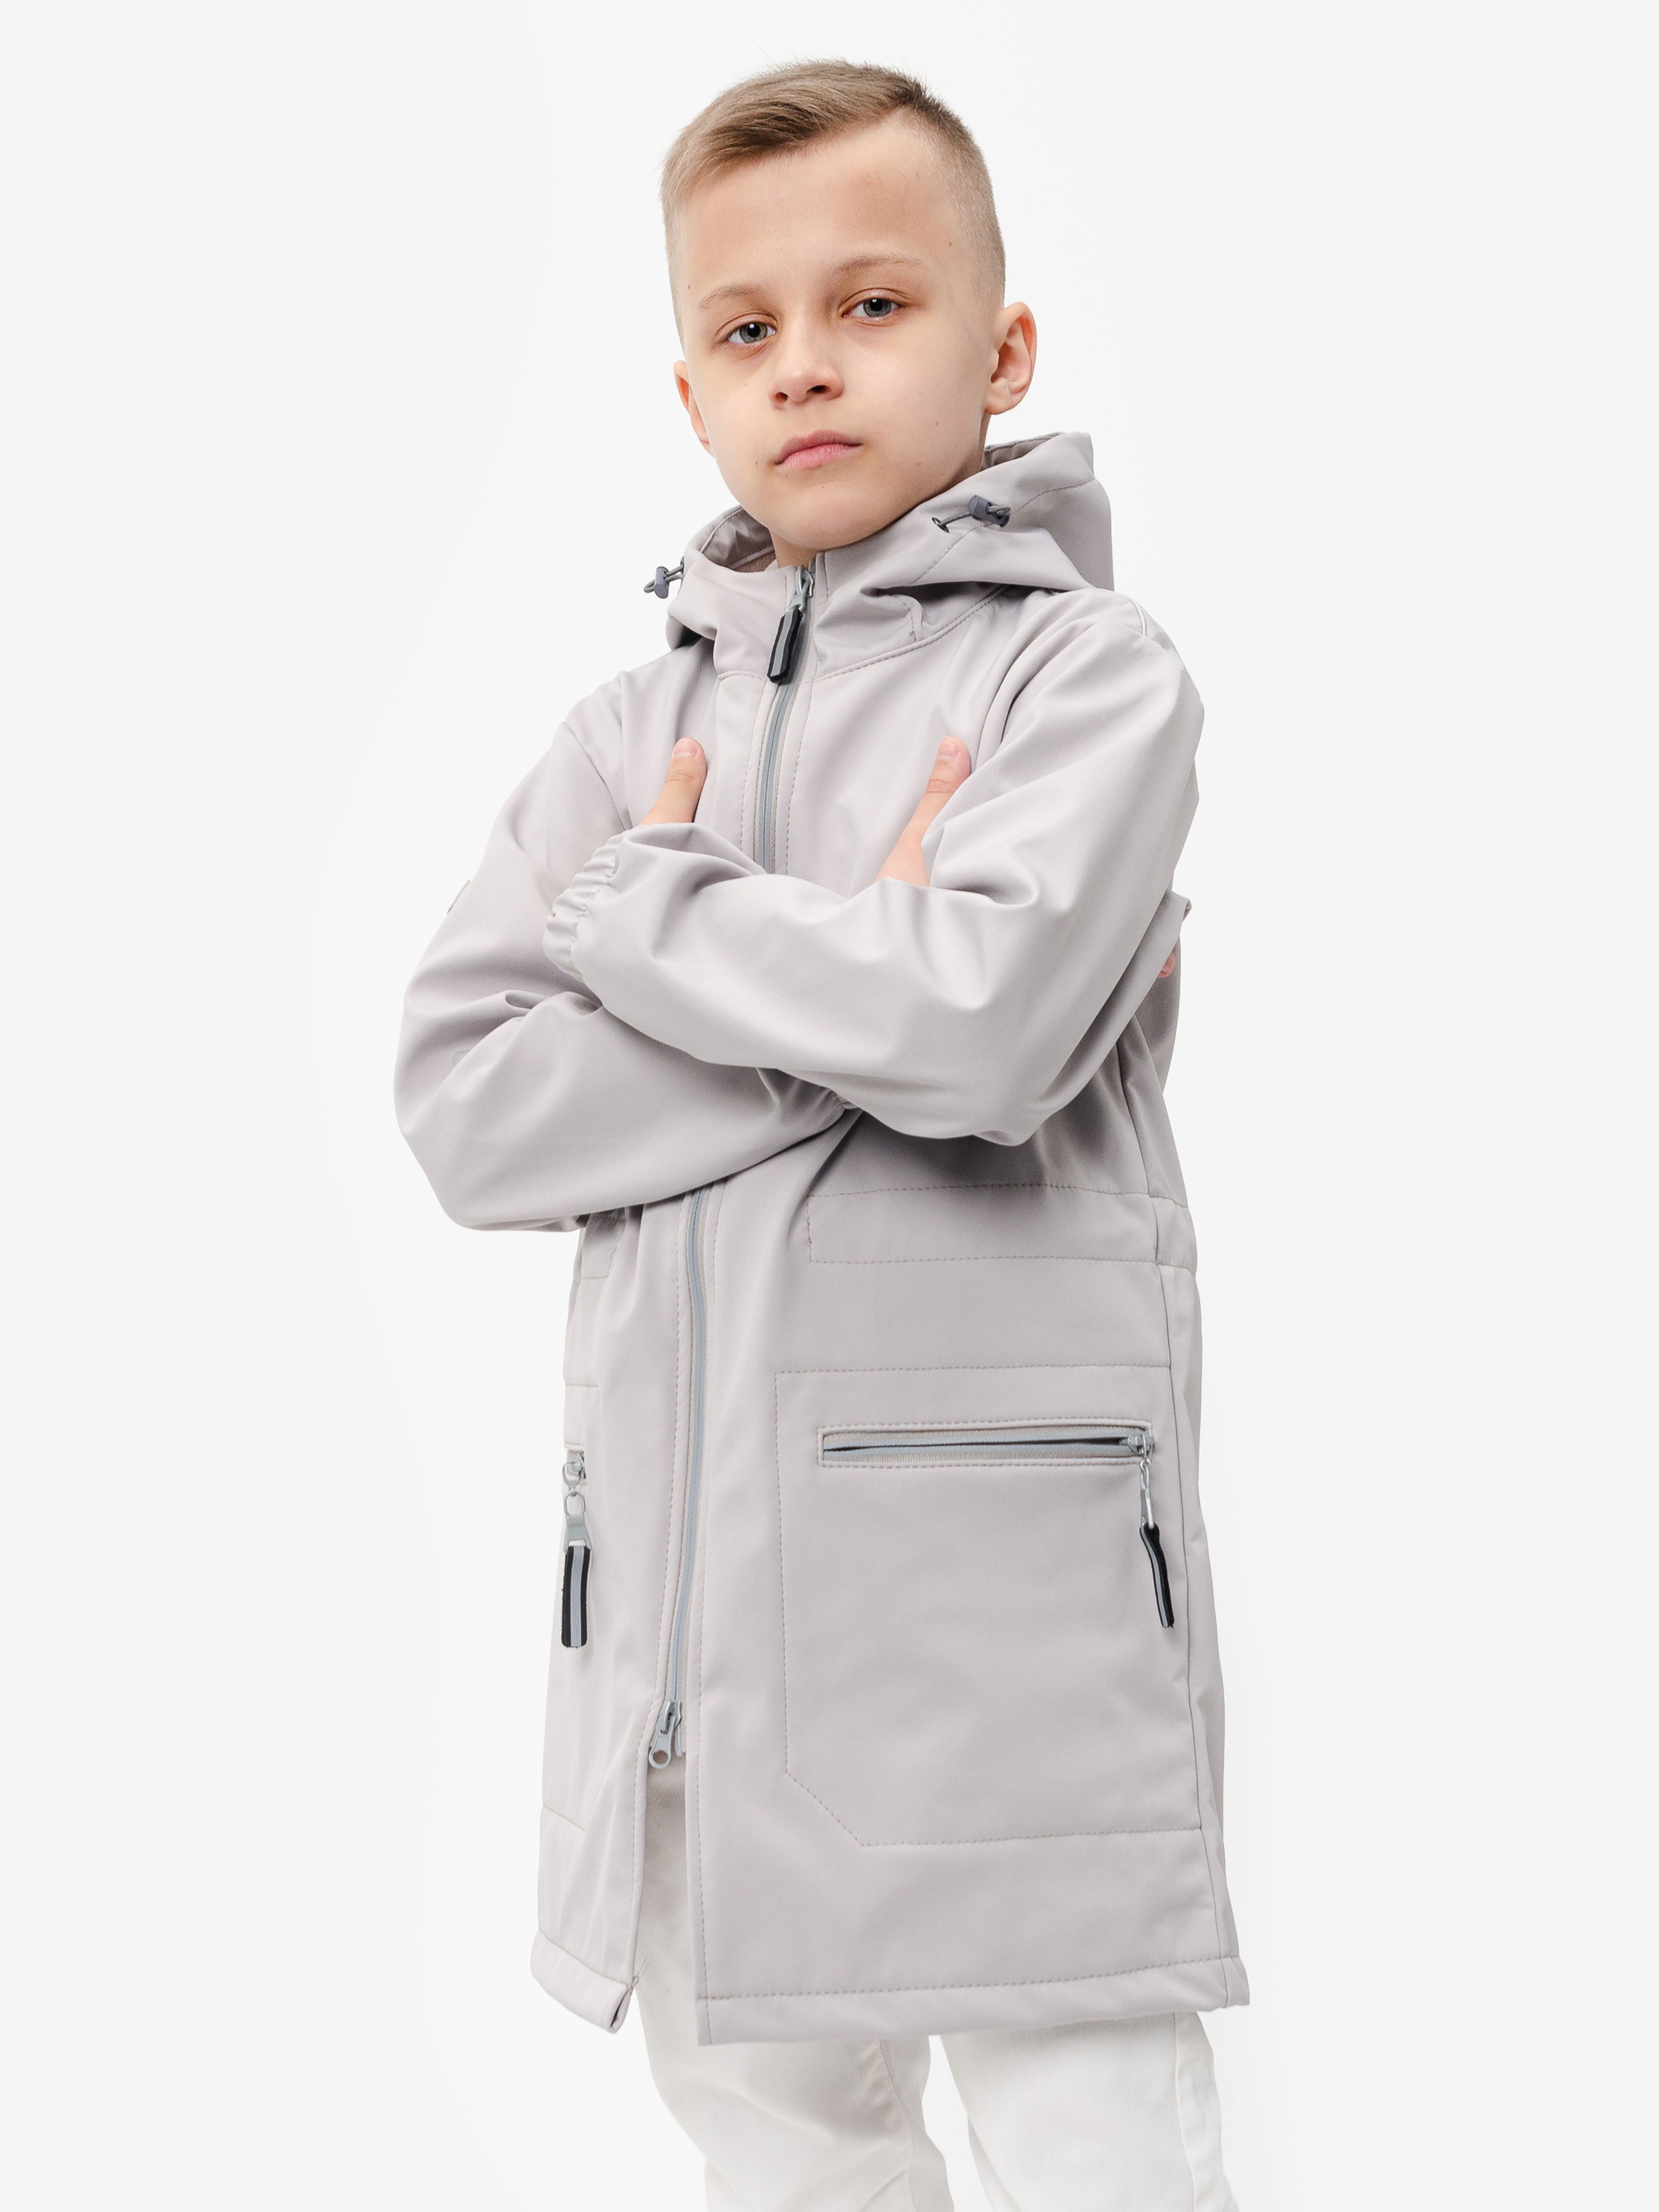 Демисезонная детская мембранная куртка Гуффи, цвет серый туман измембранной ткани